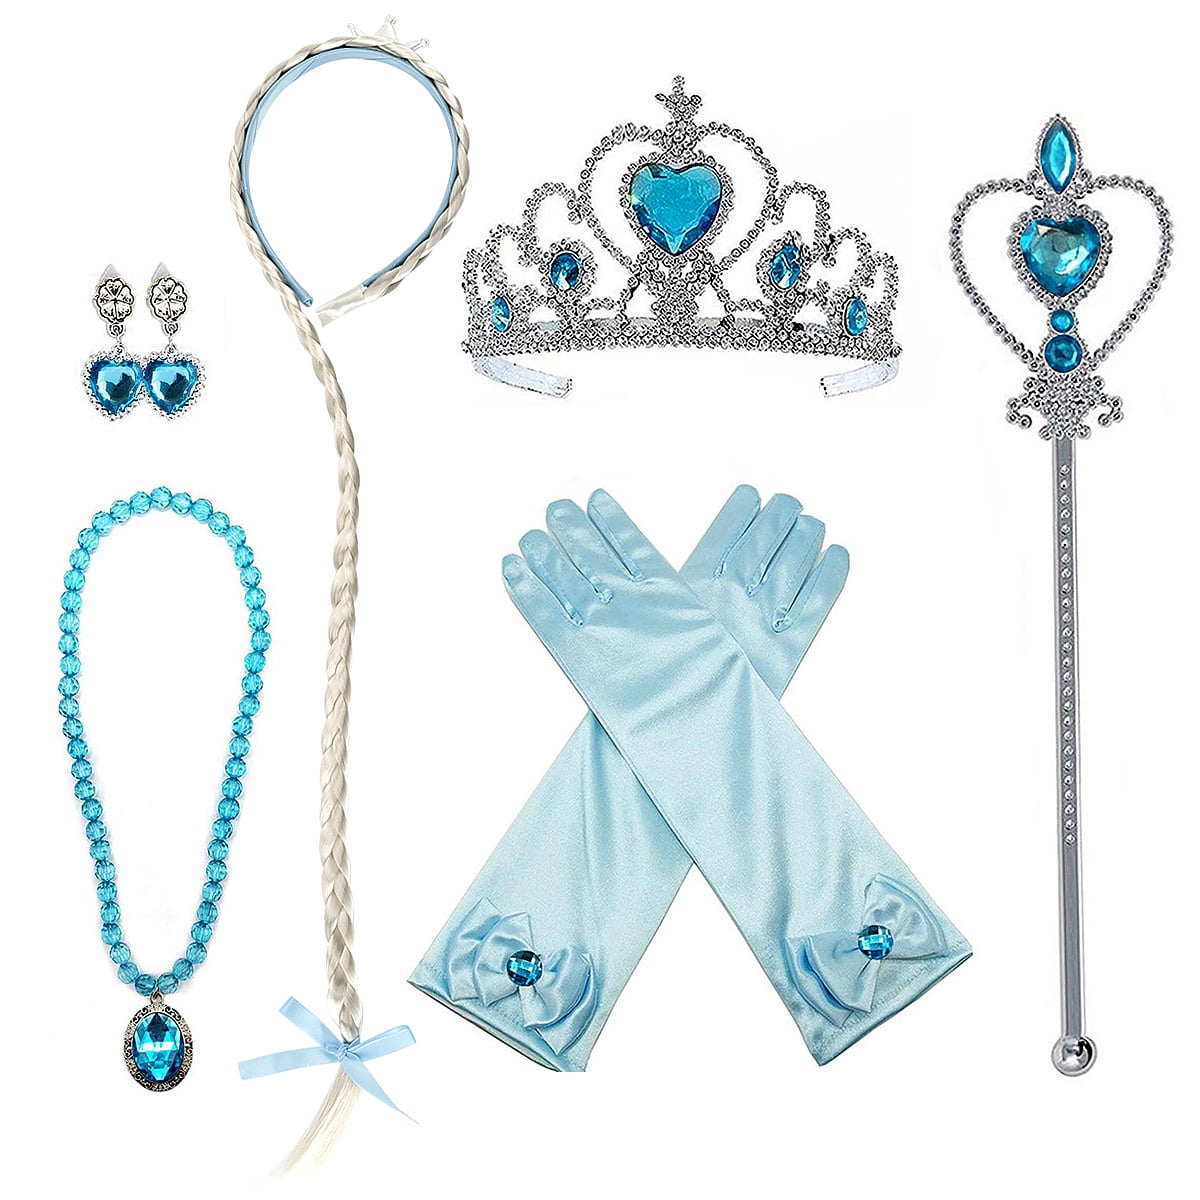 necklace Set Frozen Snowflake Necklace and Bracelet Set Pretend Play Dress up Elsa